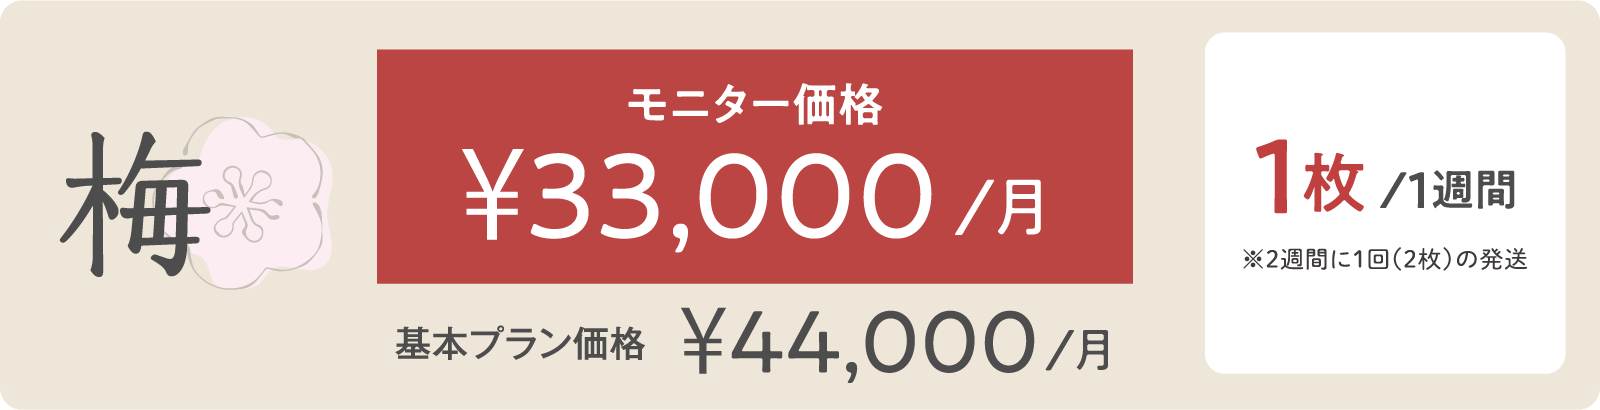 梅モニター価格 ¥33,000/月 1枚/１週間